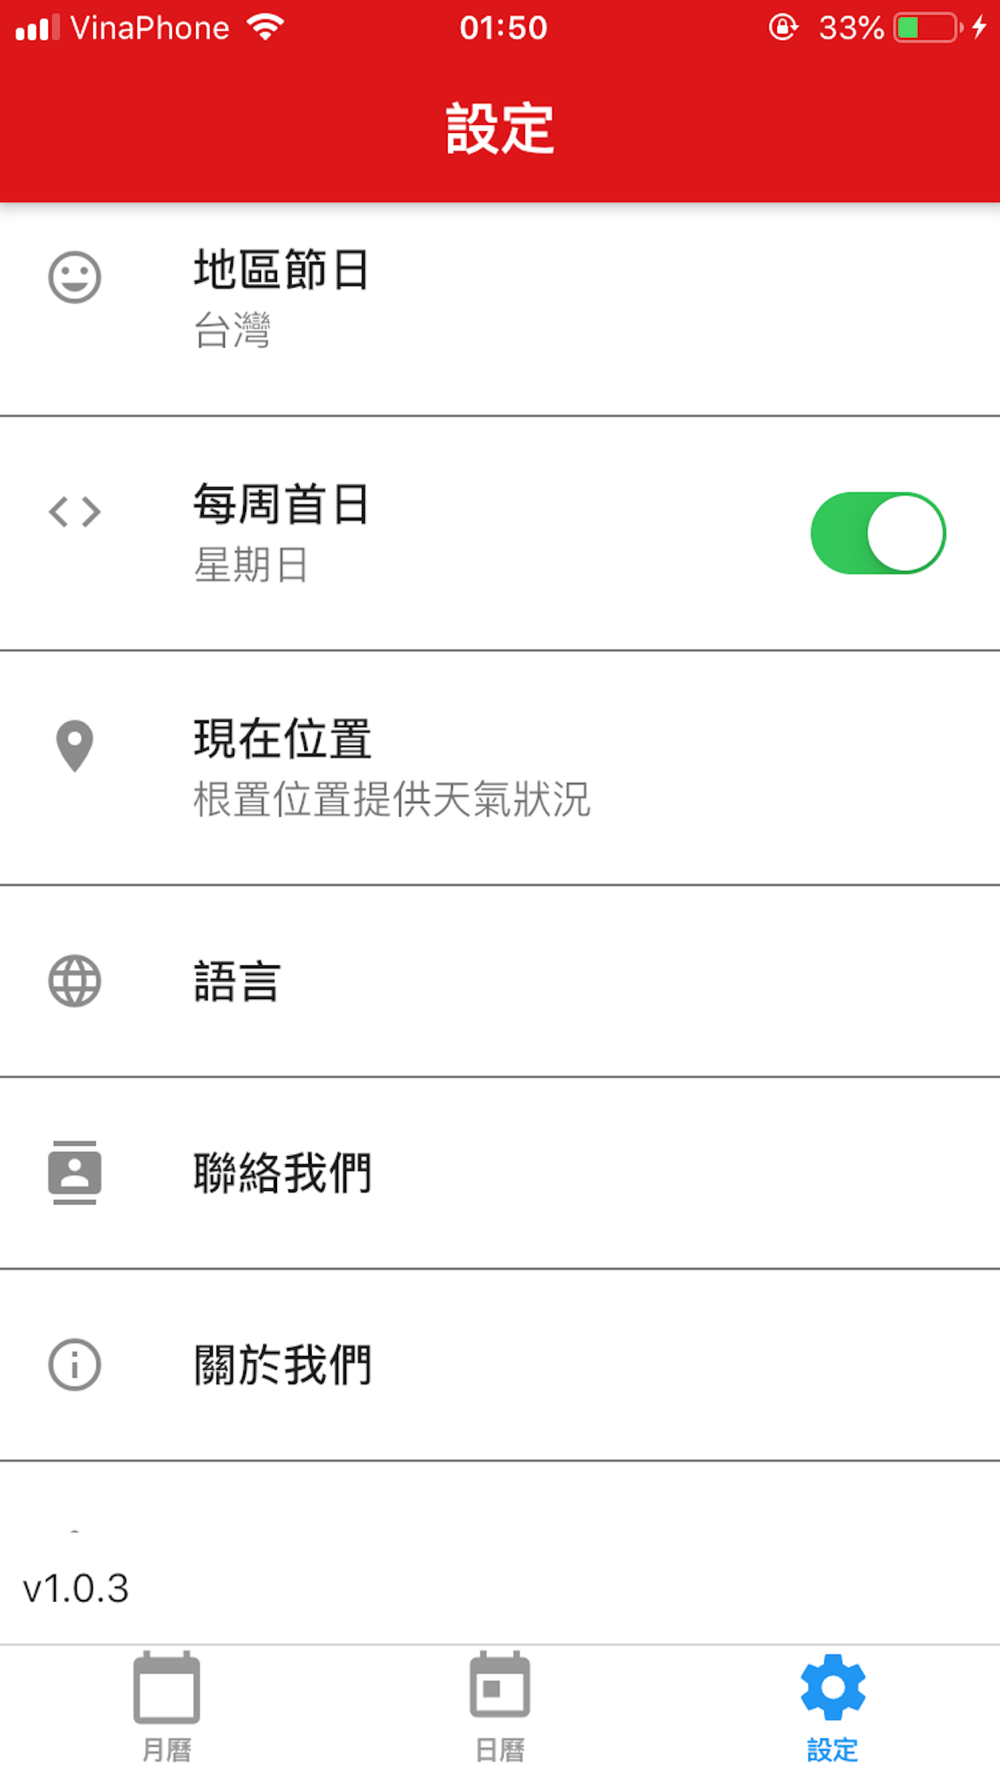 日曆 農曆free Download App For Iphone Steprimo Com